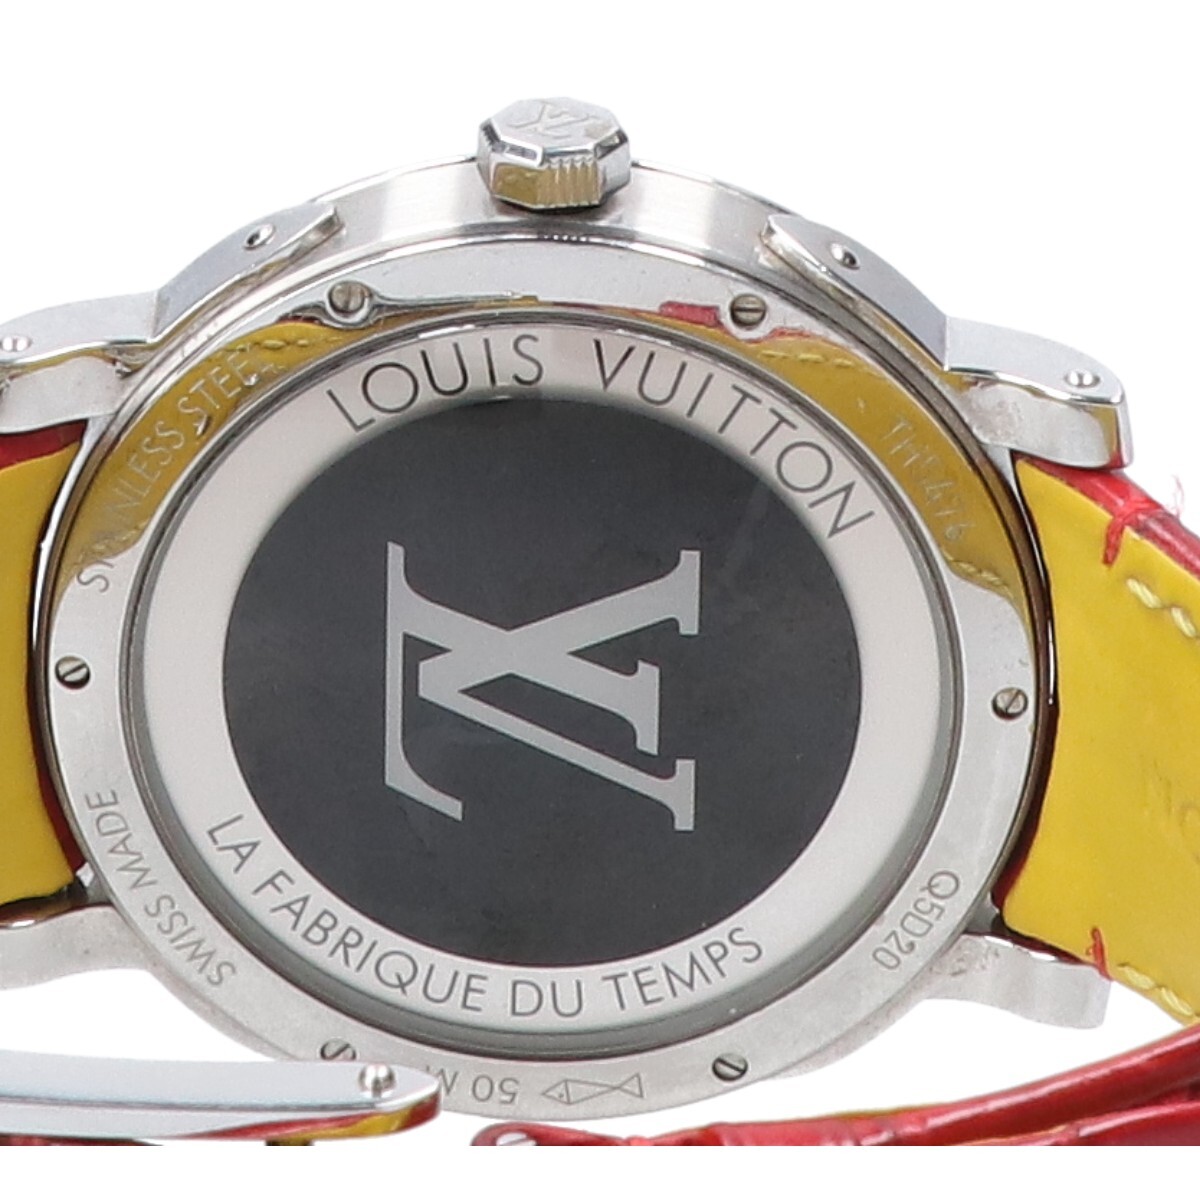 LOUIS VUITTON ルイヴィトン Q5D20 エスカル タイムゾーン ワールドタイム 自動巻き 腕時計 シルバー/レッド メンズ_画像7